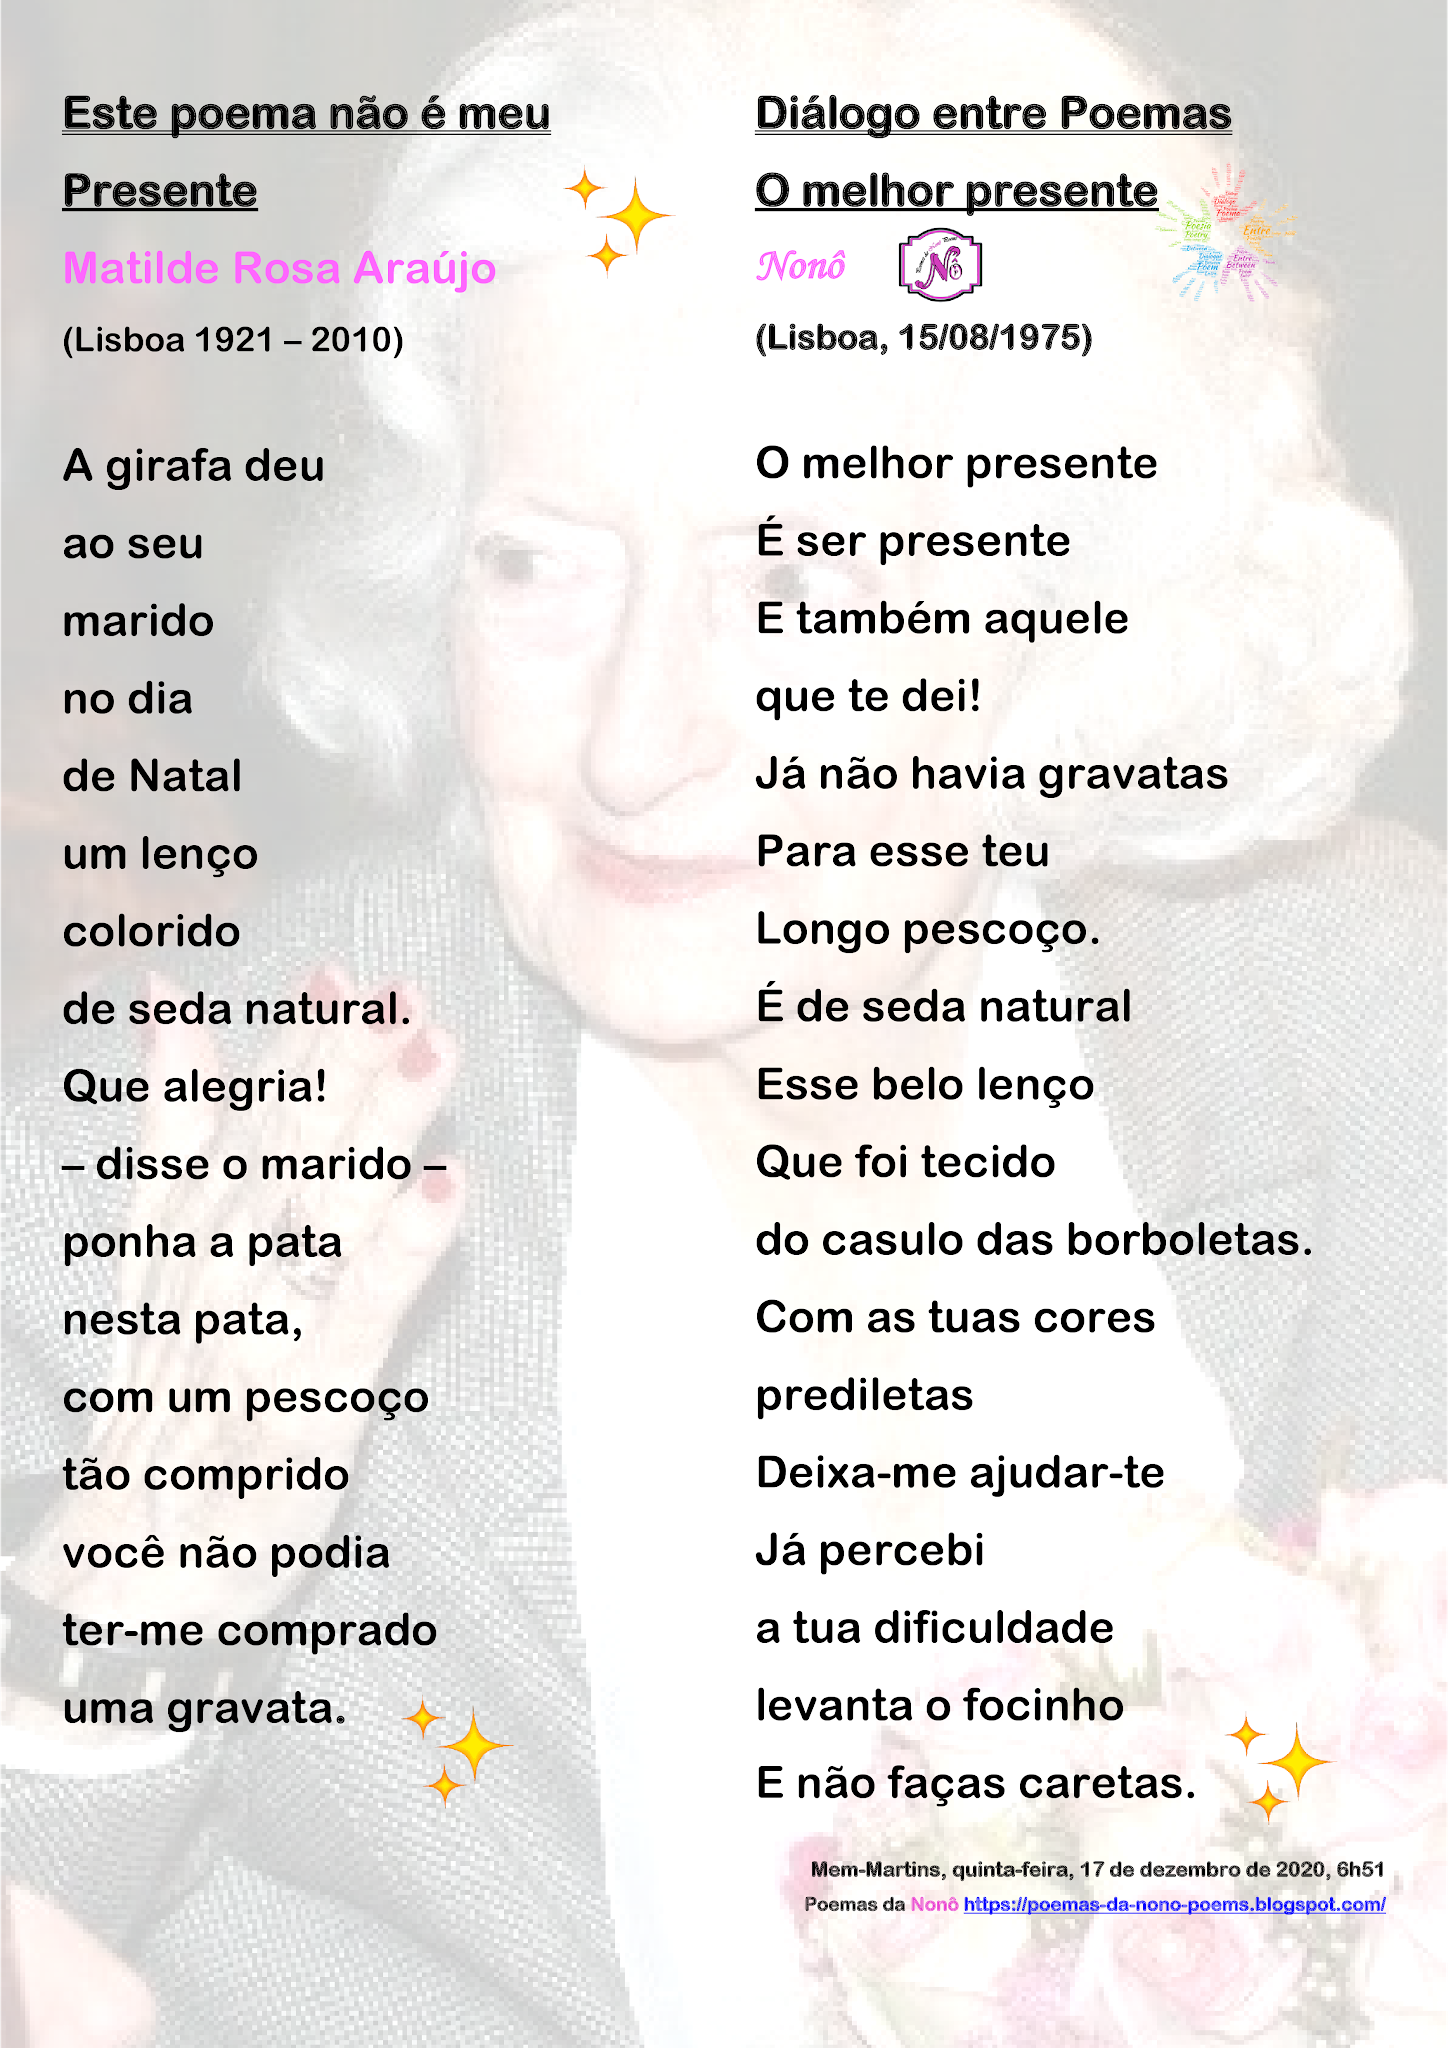 Poemas da Nonô: poema não é meu Presente - Matilde Rosa Araújo & Diálogo entre Poemas - O melhor - Nonô